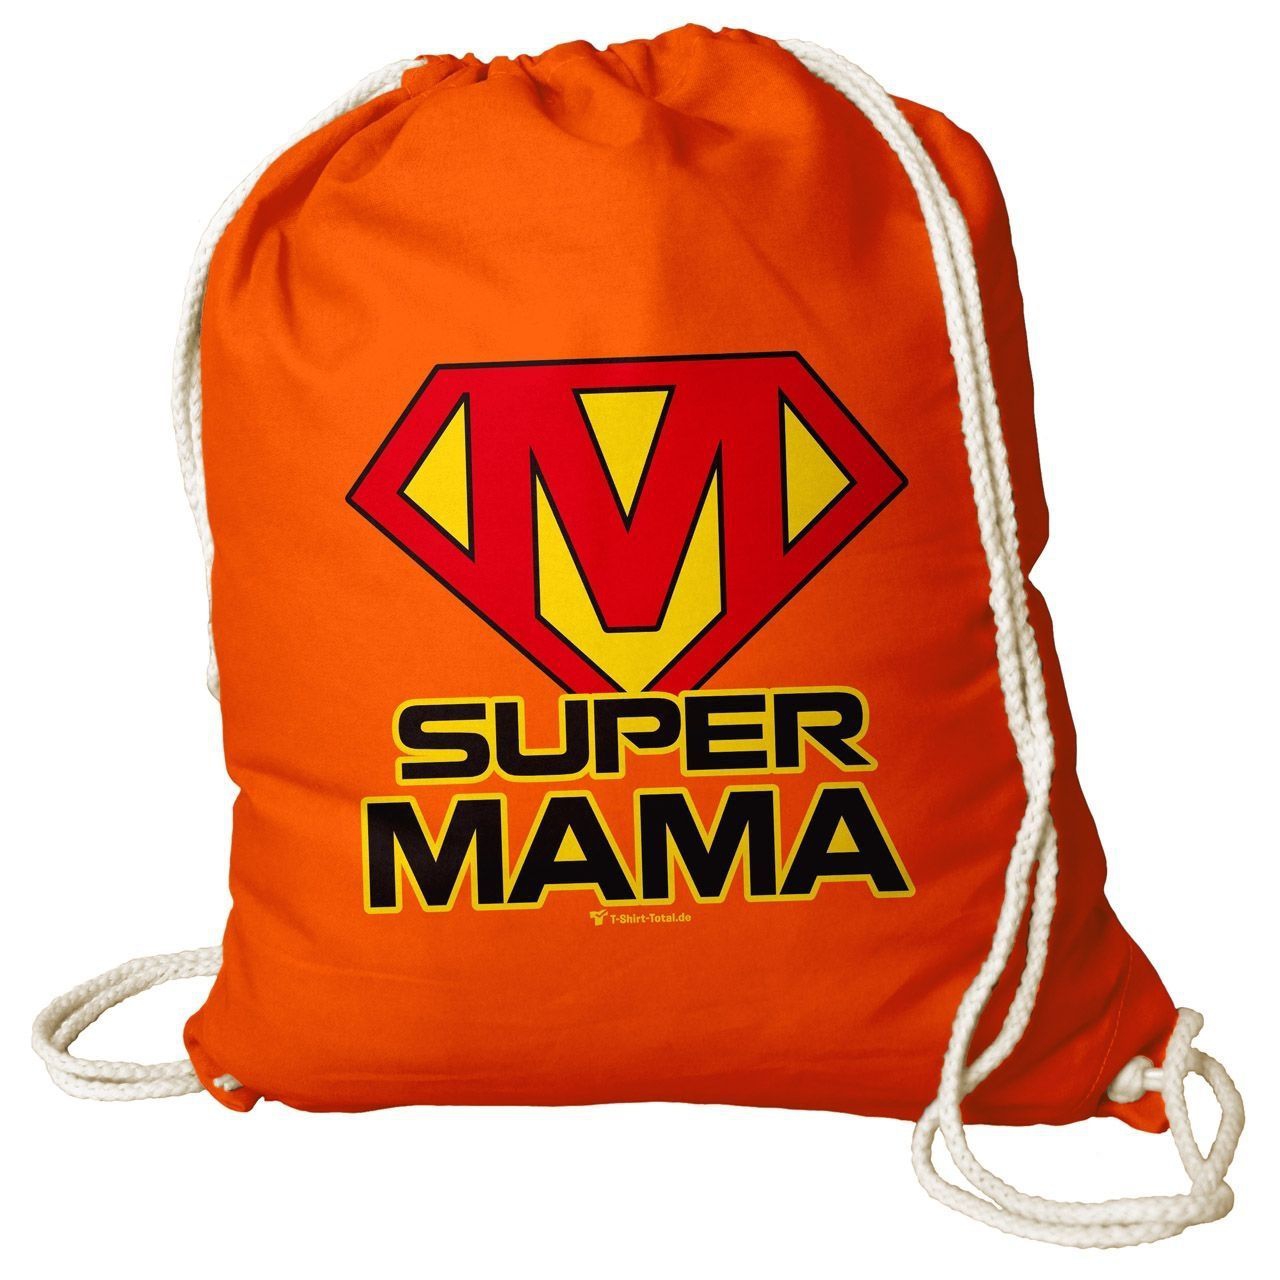 Super Mama Rucksack Beutel orange